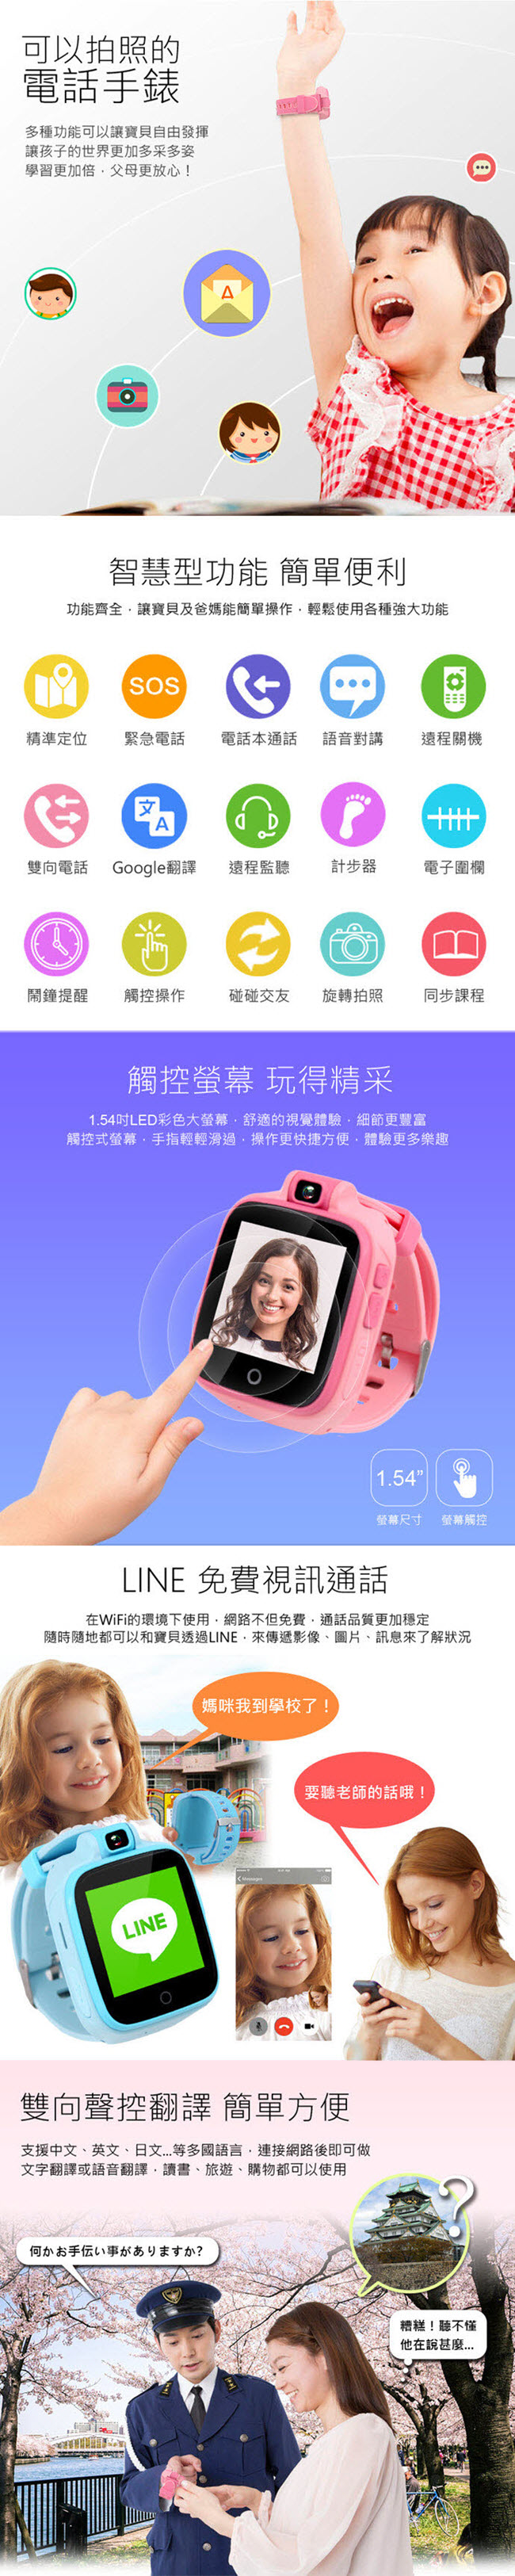 (福利品) IS愛思 CW-04 4G LTE定位監控兒童智慧手錶